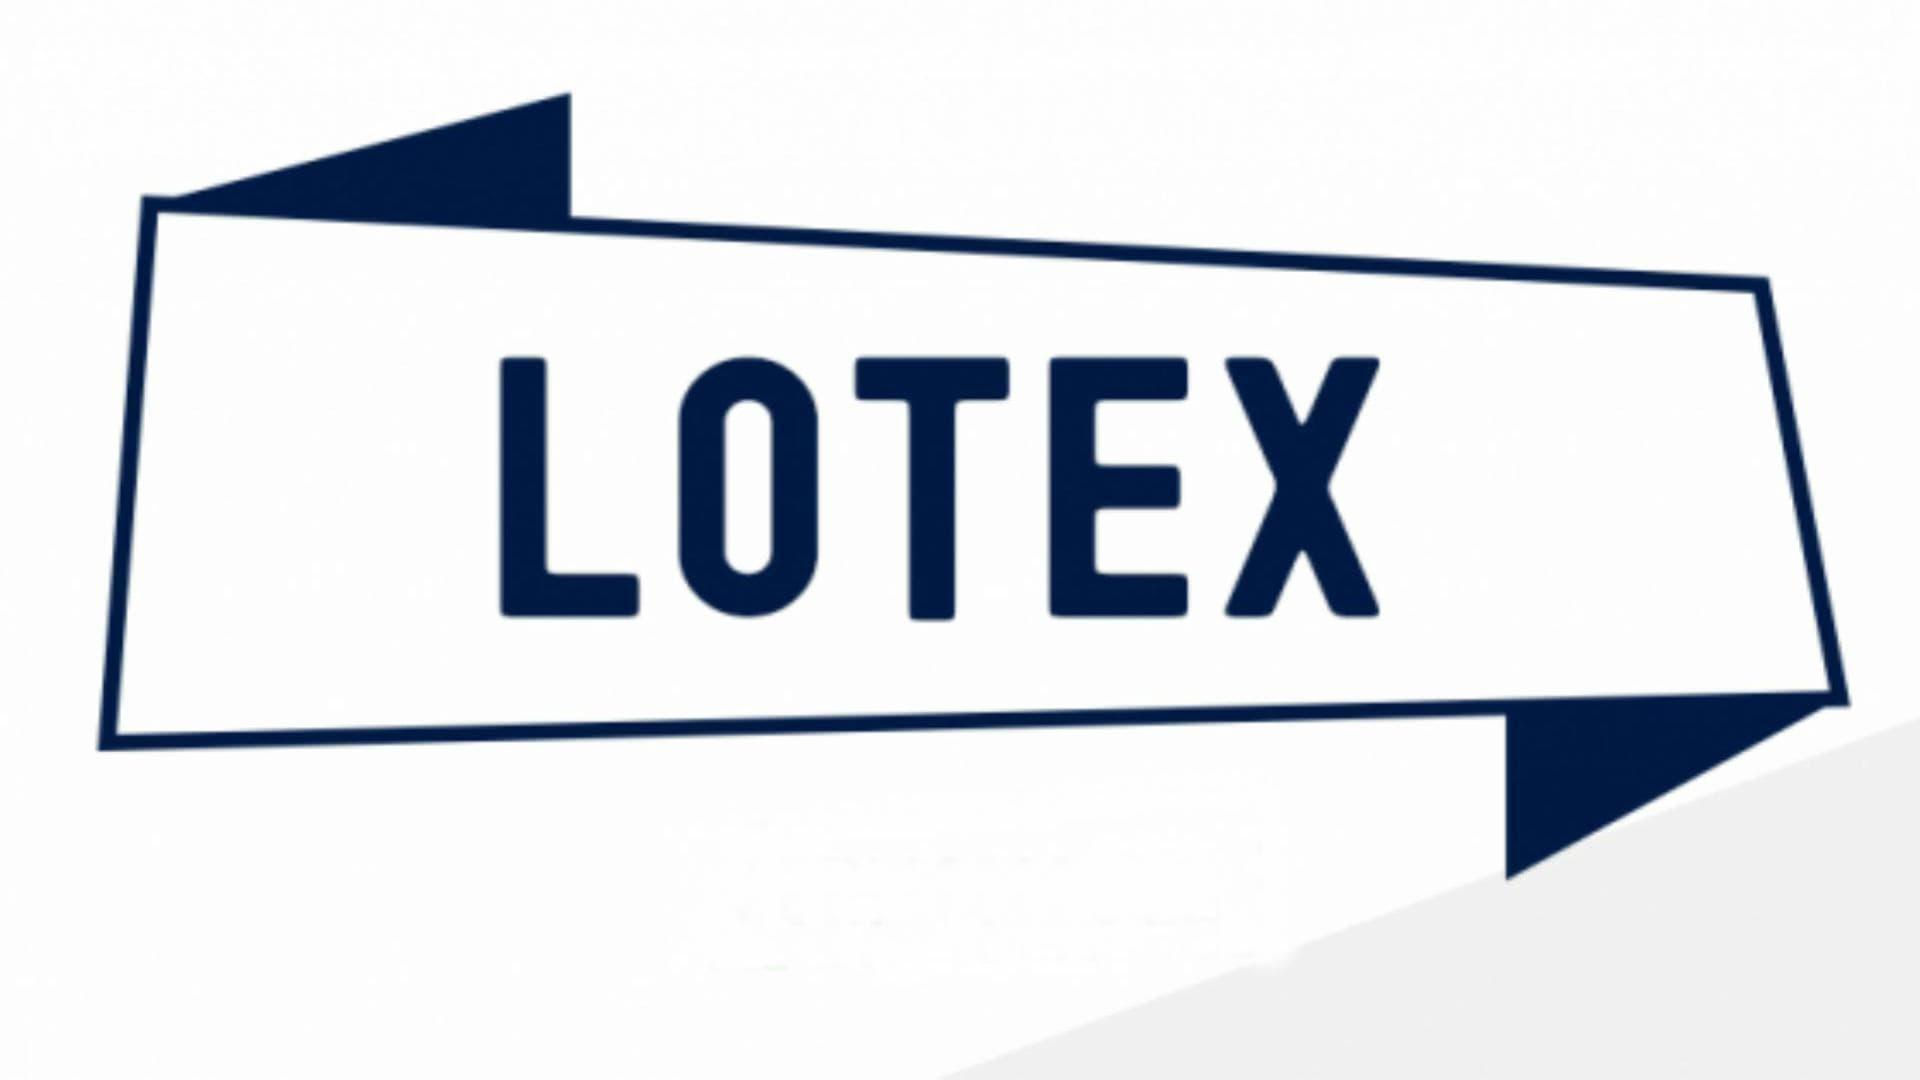 O governo brasileiro já havia aprovado a privatização da Lotex. Ontem